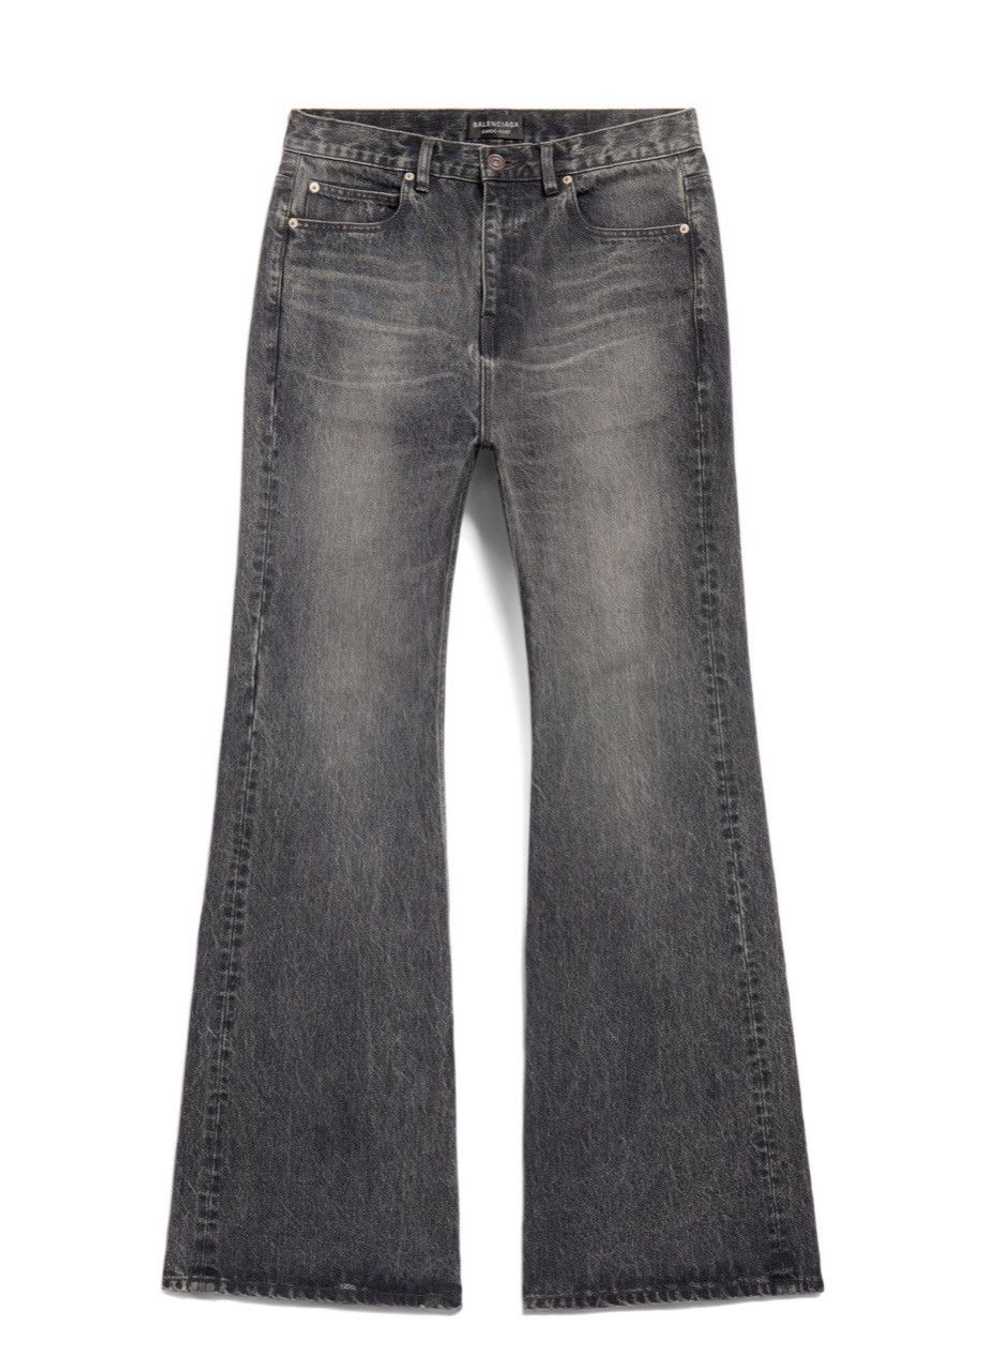 Balenciaga Boot cut pant jeans - image 1